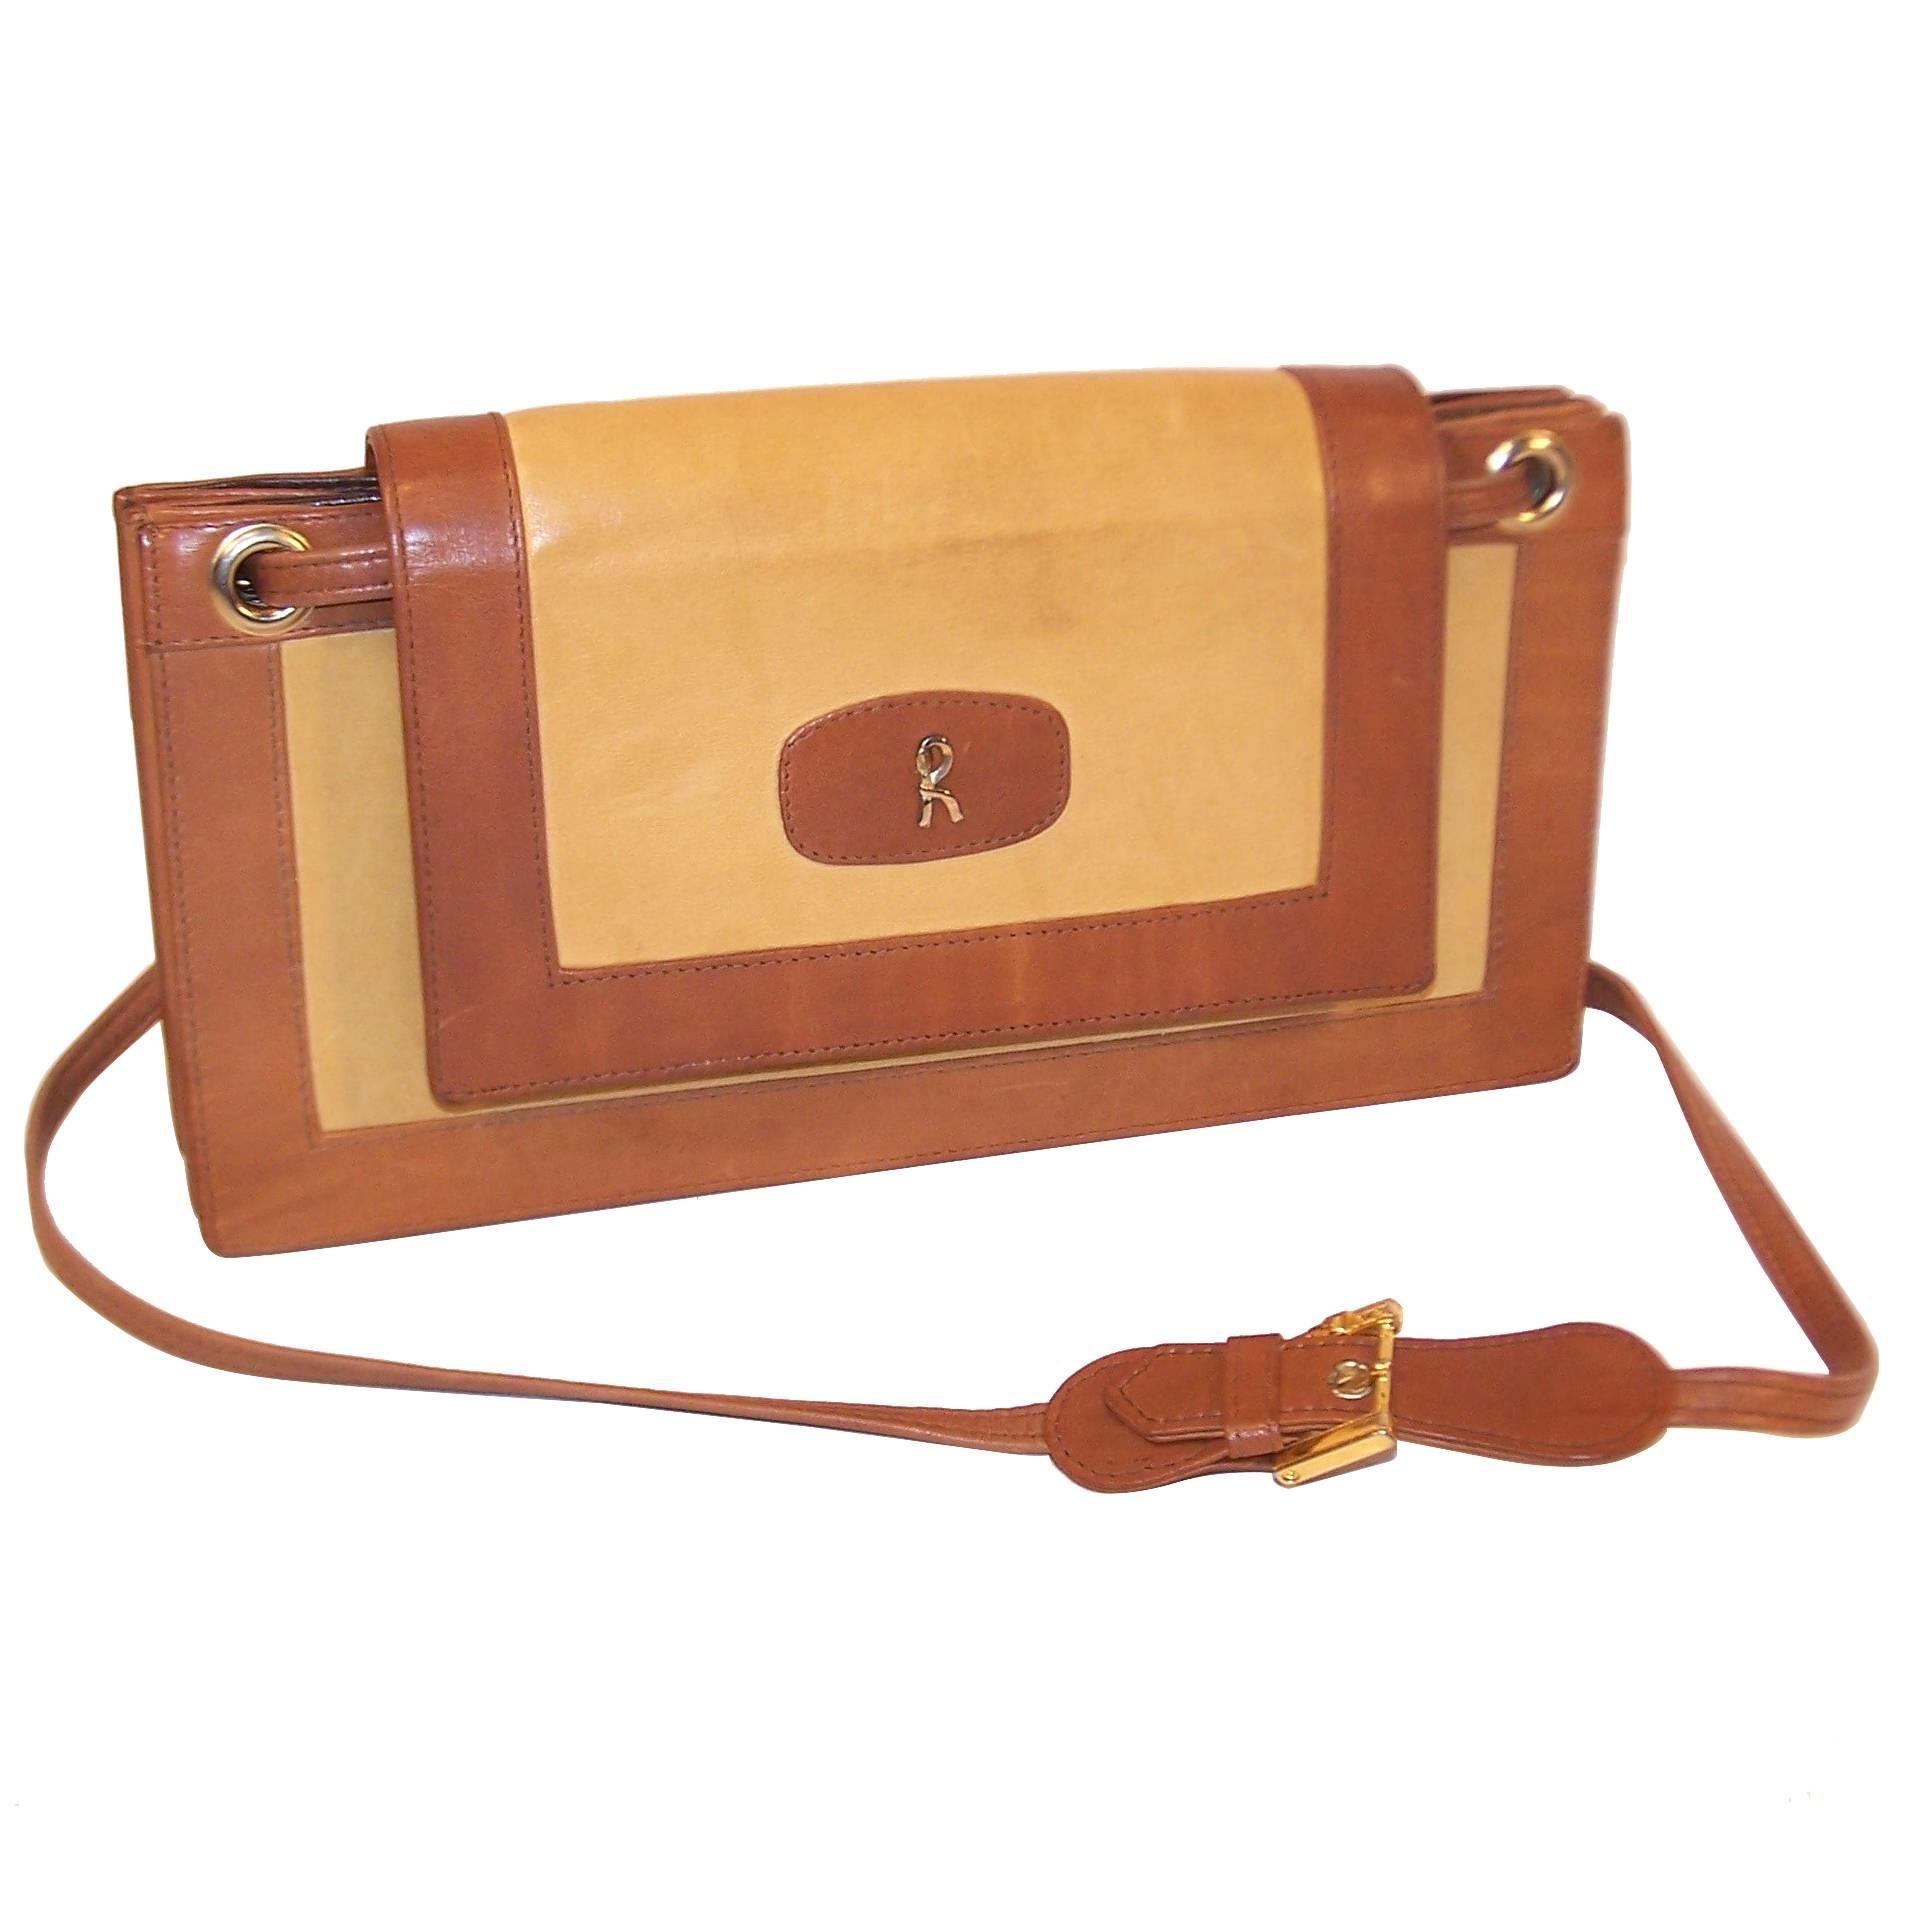 C.1970 Roberta Di Camerino Full Leather Envelope Style Handbag